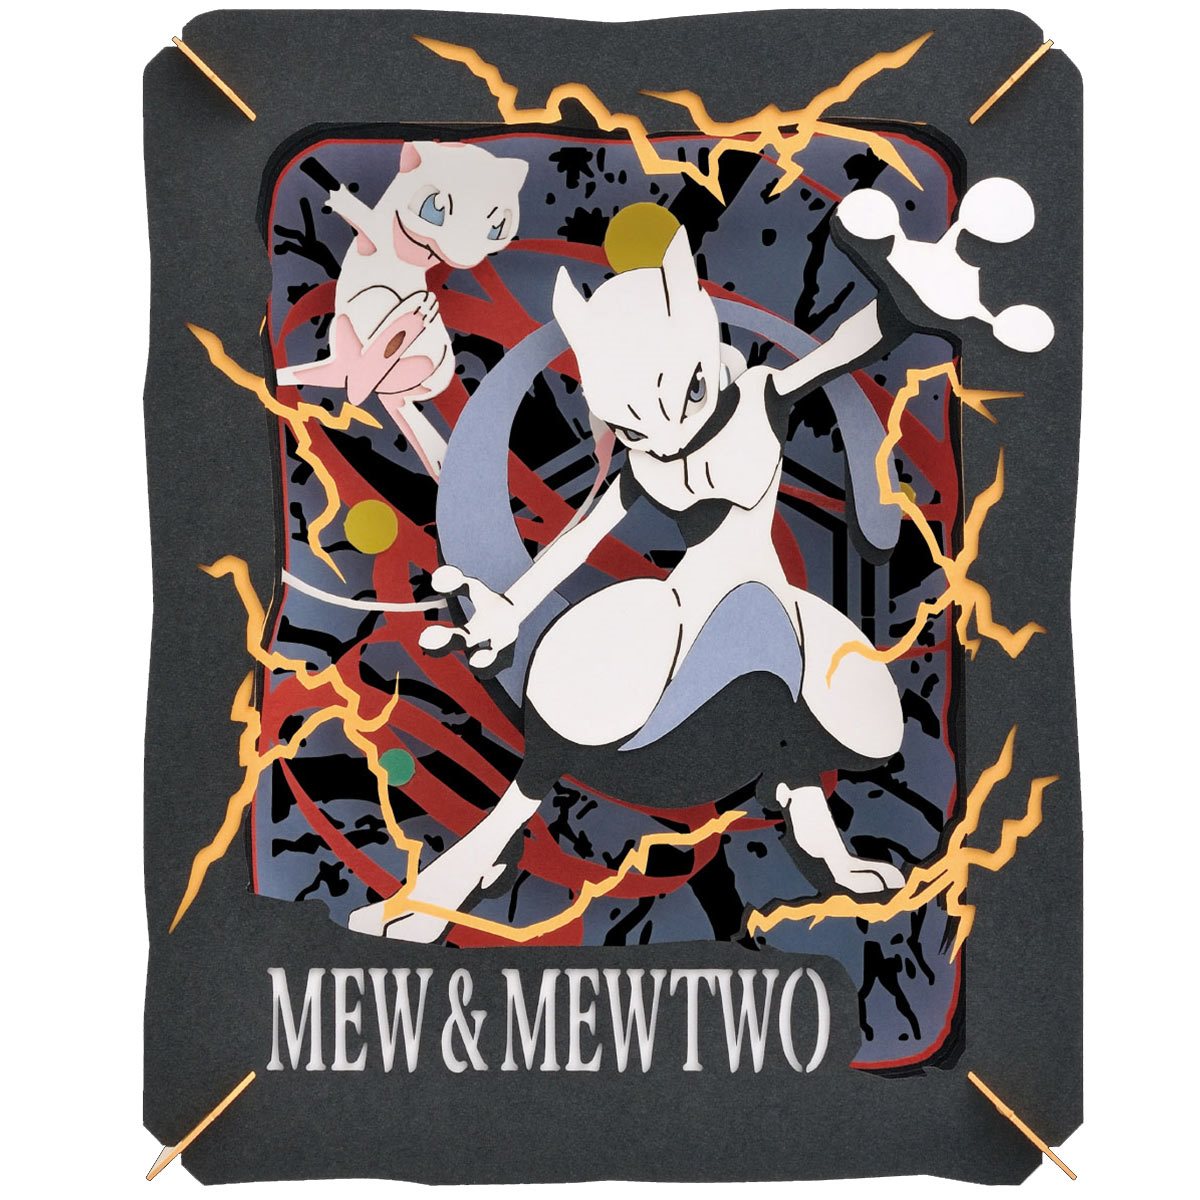 Mewtwo  Pokemon mewtwo, Mew and mewtwo, Mewtwo